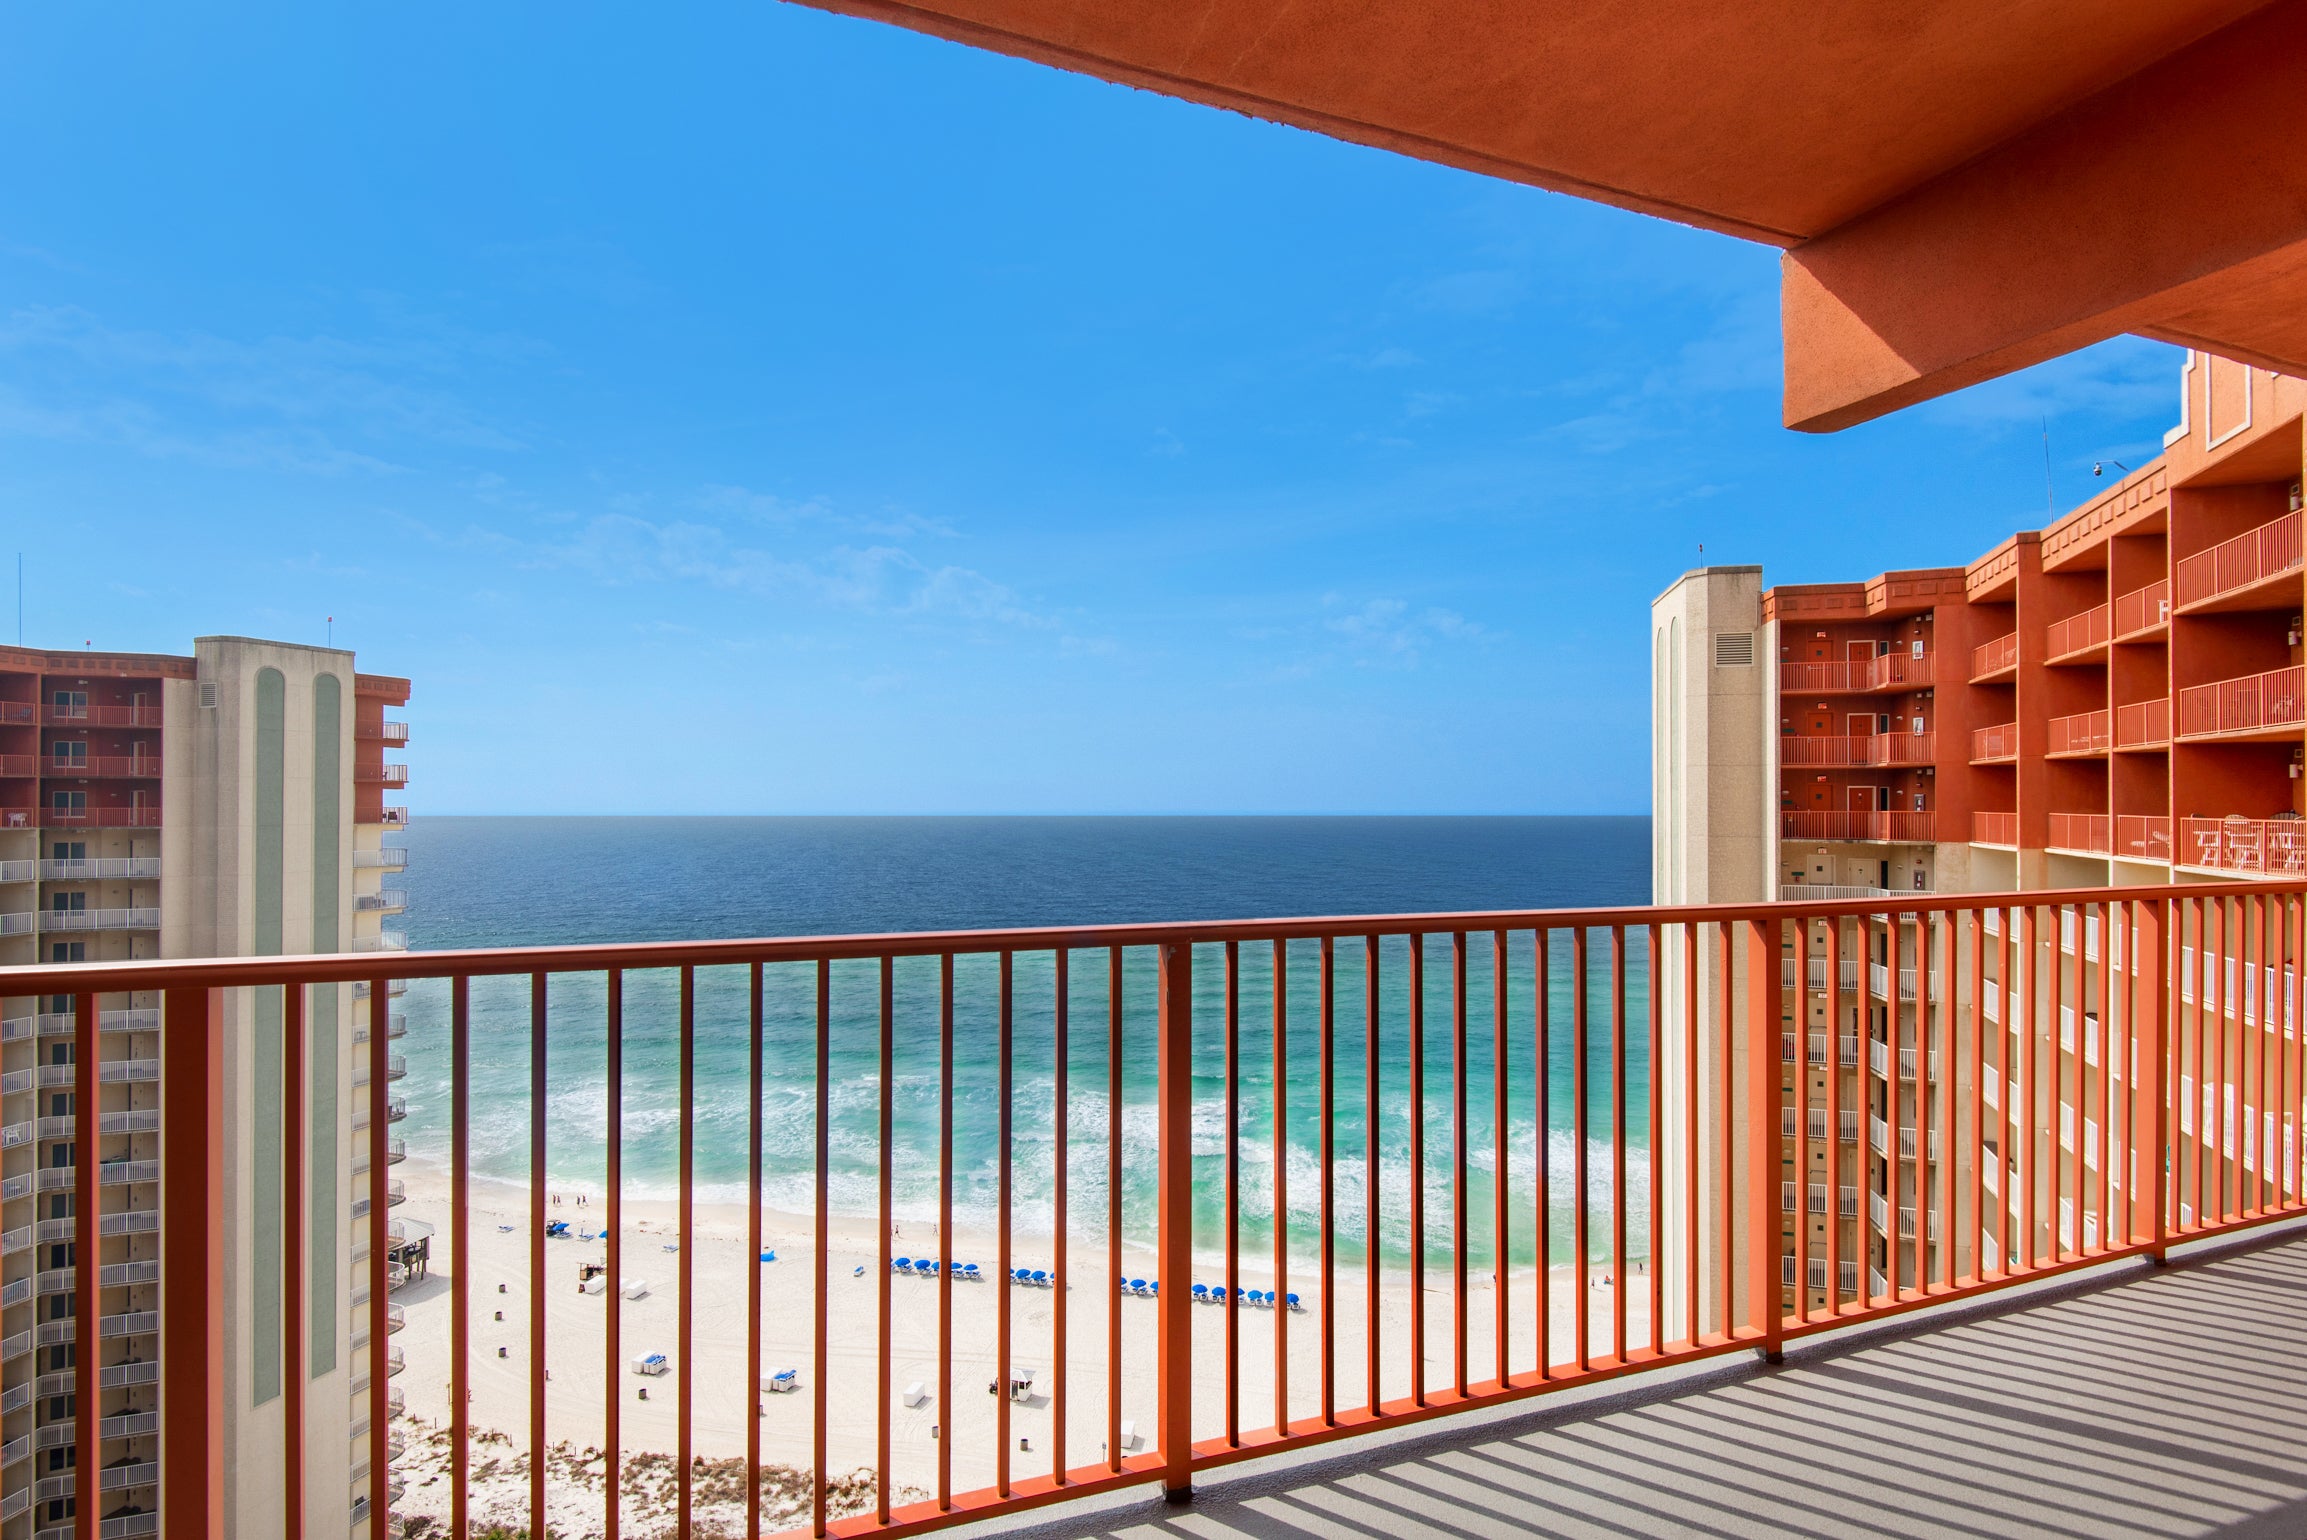 Shores of Panama 2112 balcony views